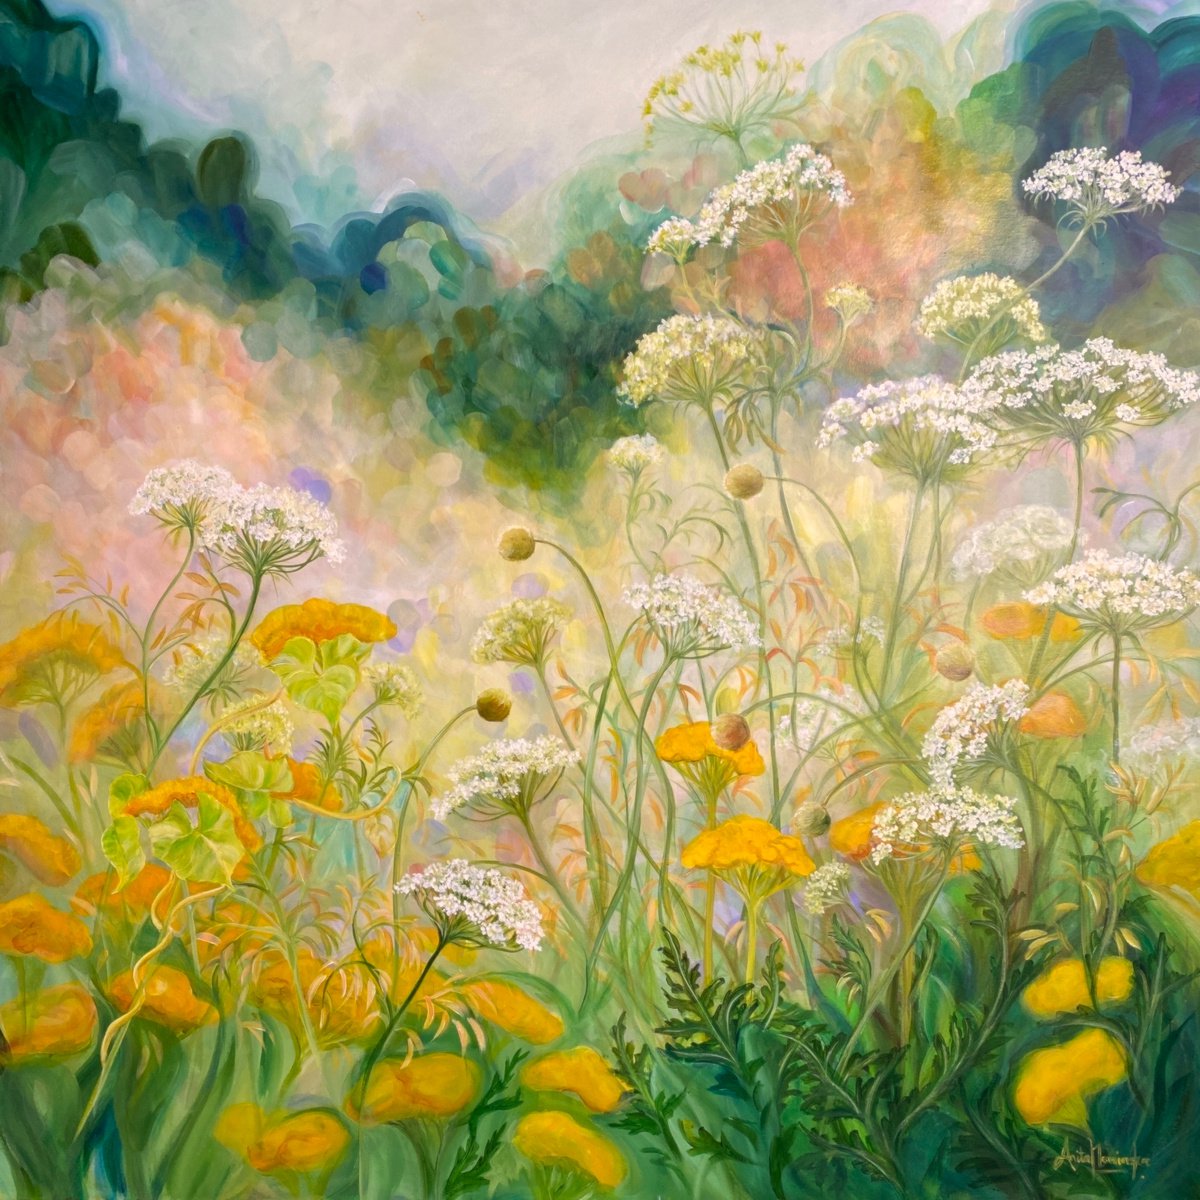 Replenish- Summer garden Nature painting by Anita Nowinska